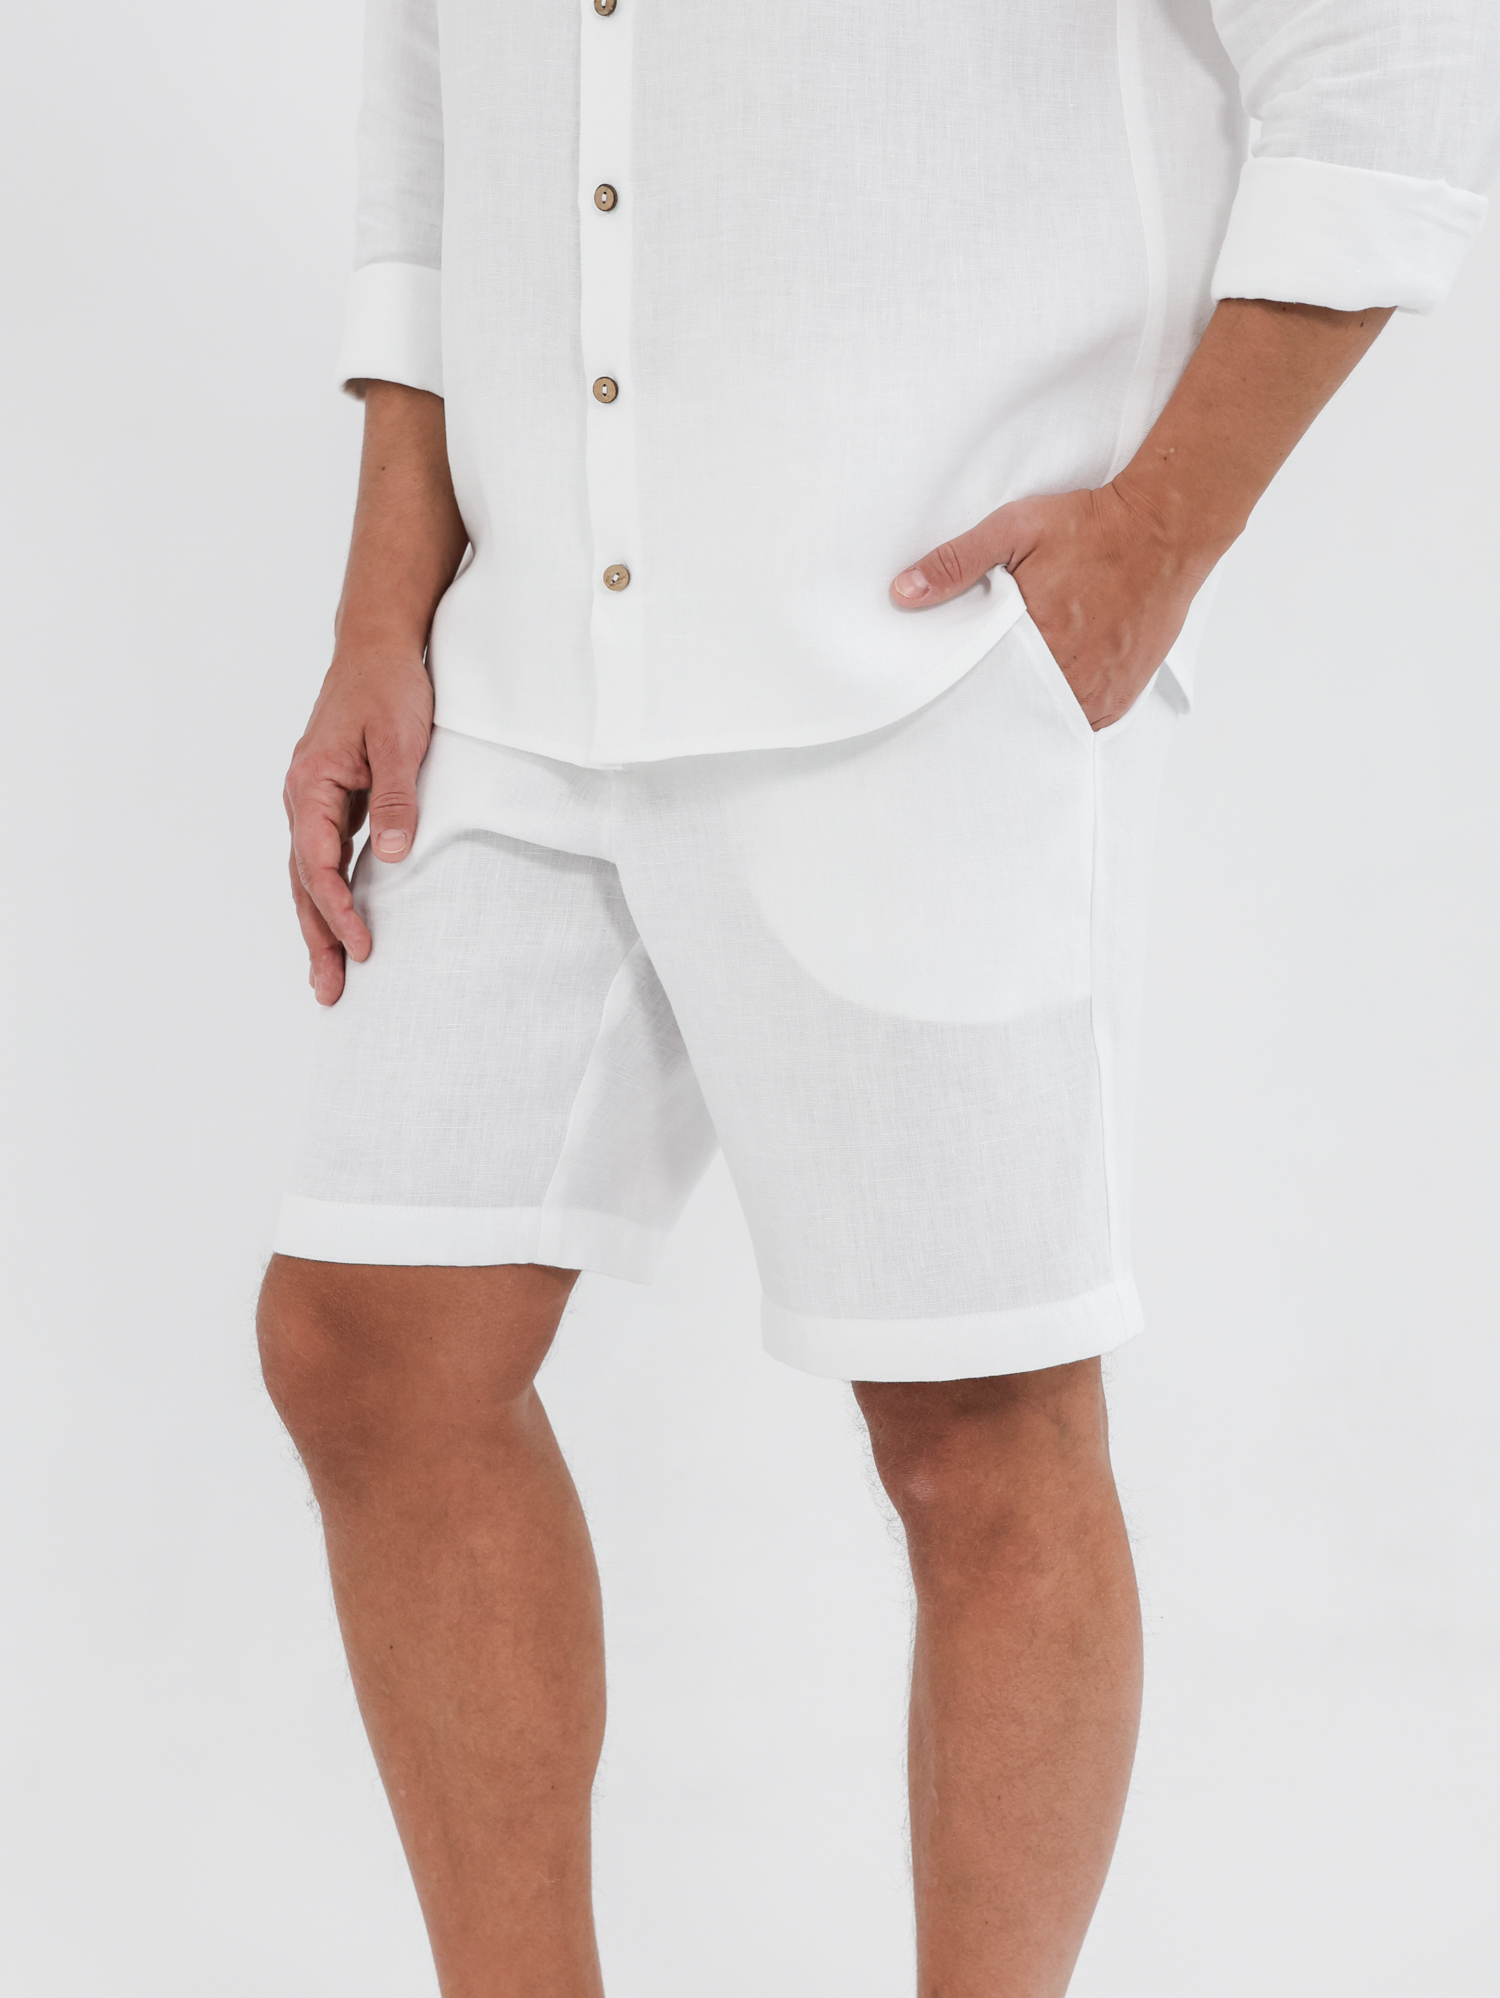 Men's white linen shorts